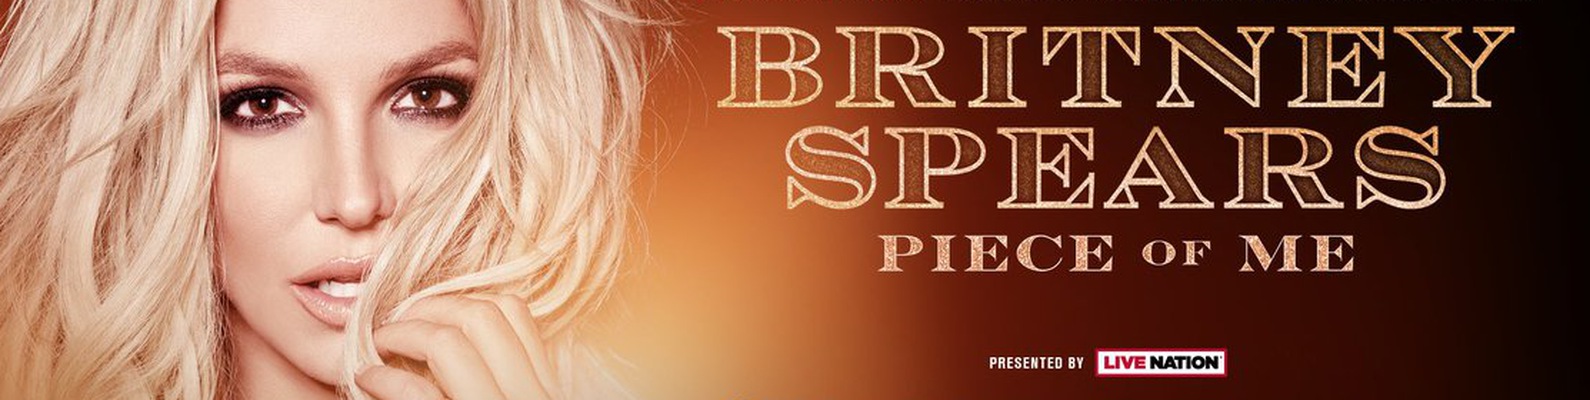 Бритни спирс mp3 скачать бесплатно медленные композиции